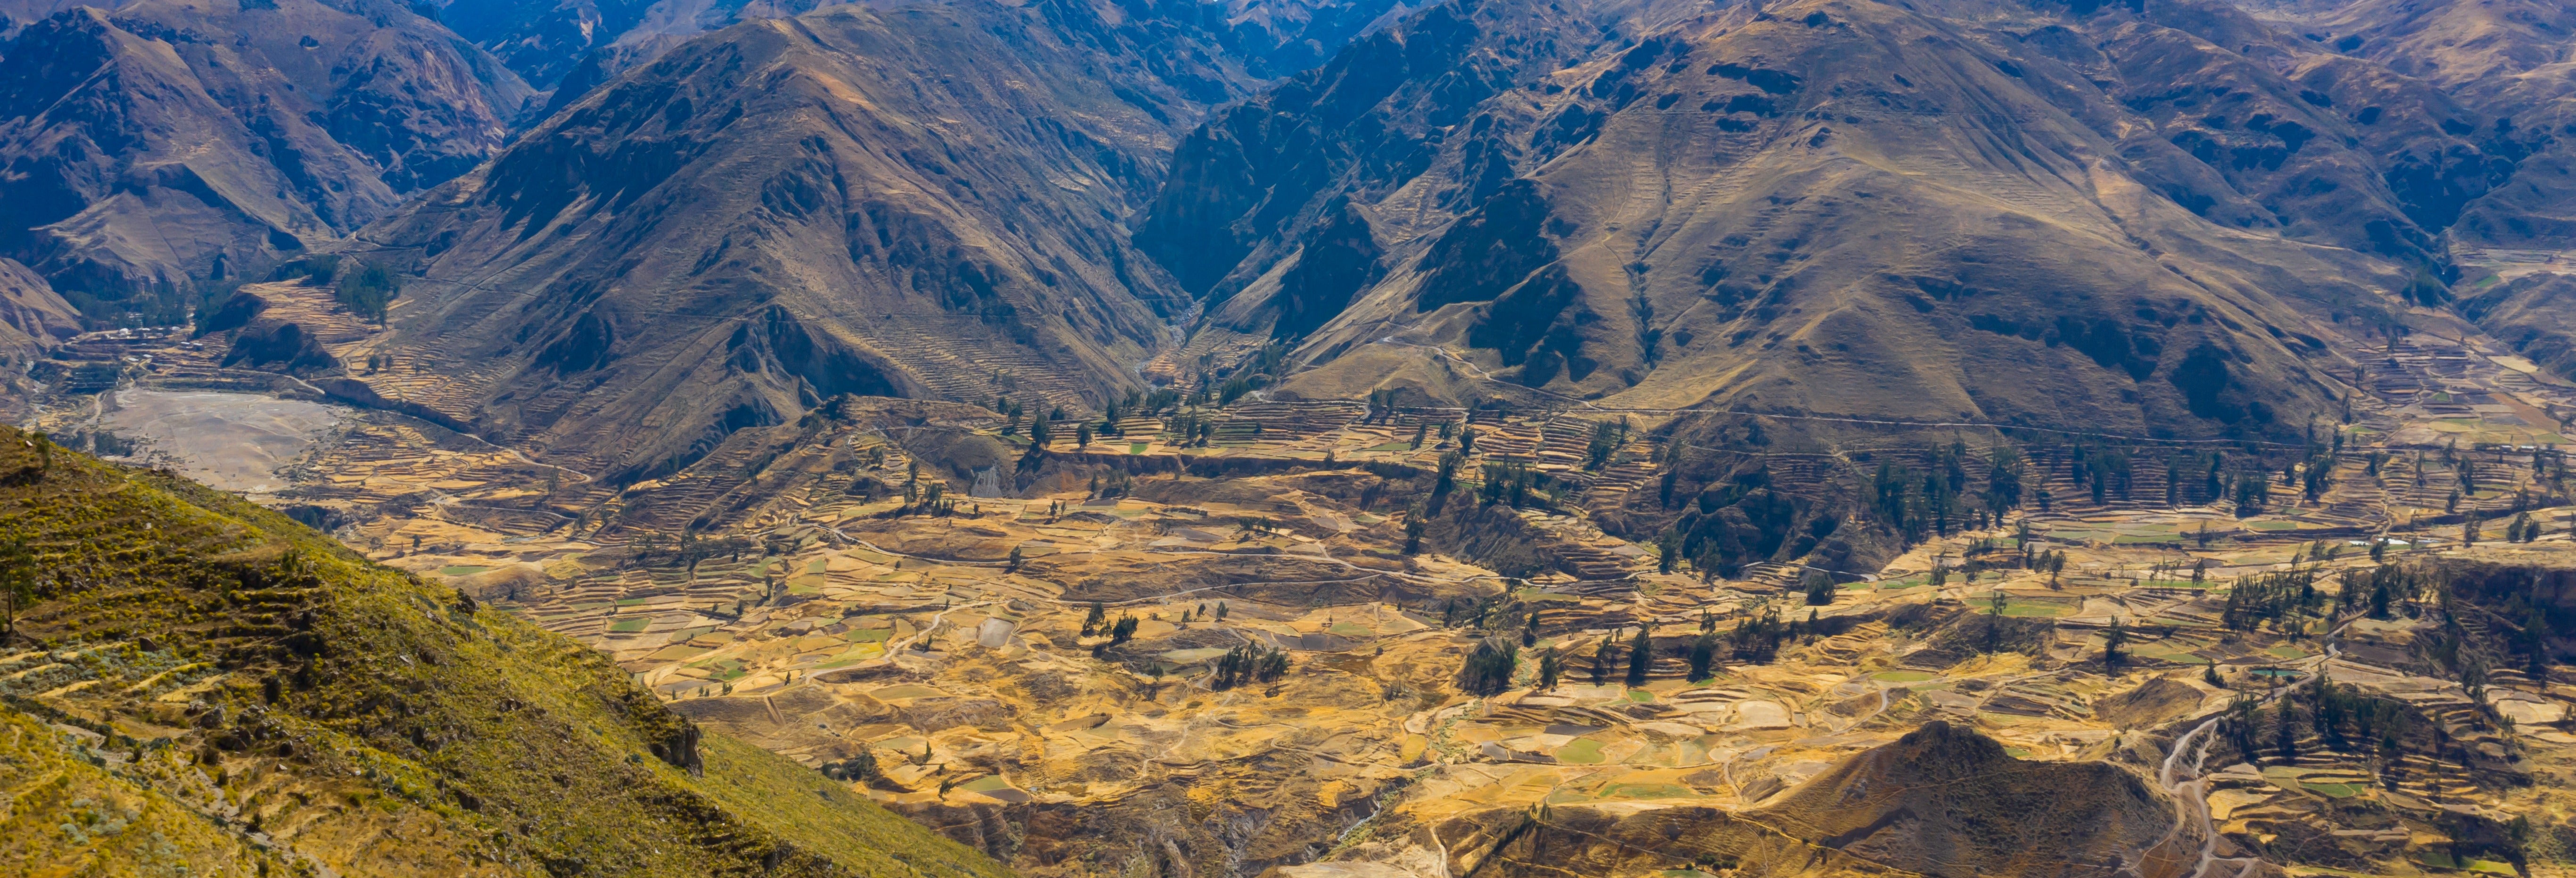 Tour de 4 dias por Arequipa e o Vale do Colca